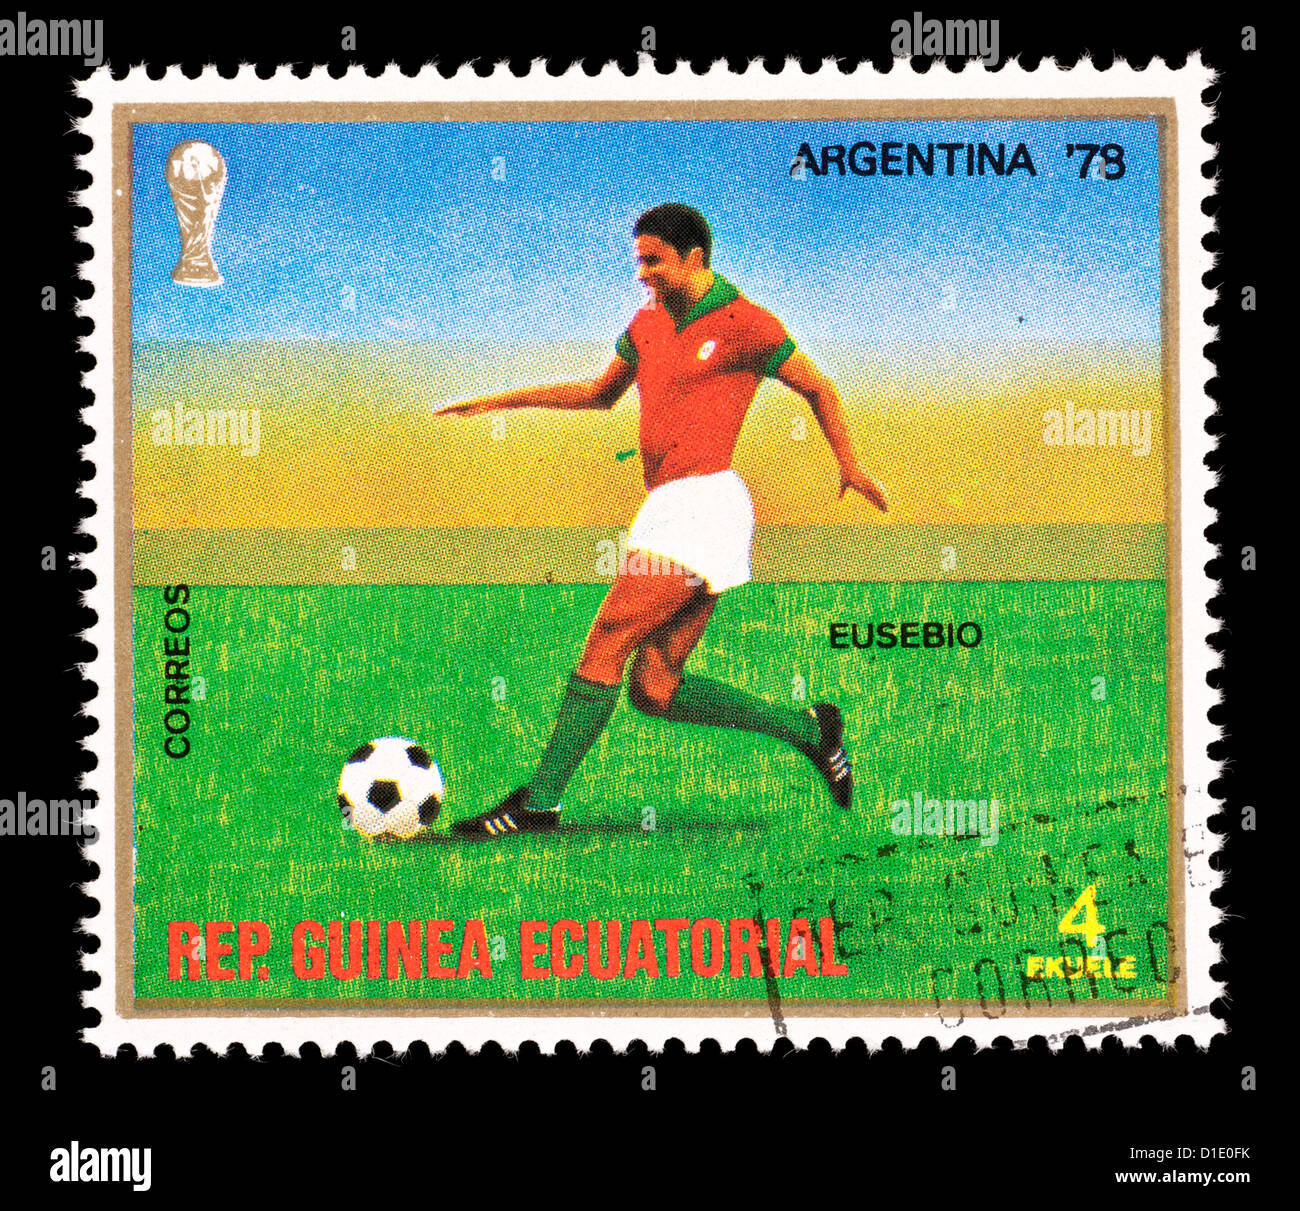 Timbre-poste de Guinée Equatoriale représentant un joueur de football, émis pour la Coupe du Monde 1978 en Argentine Banque D'Images